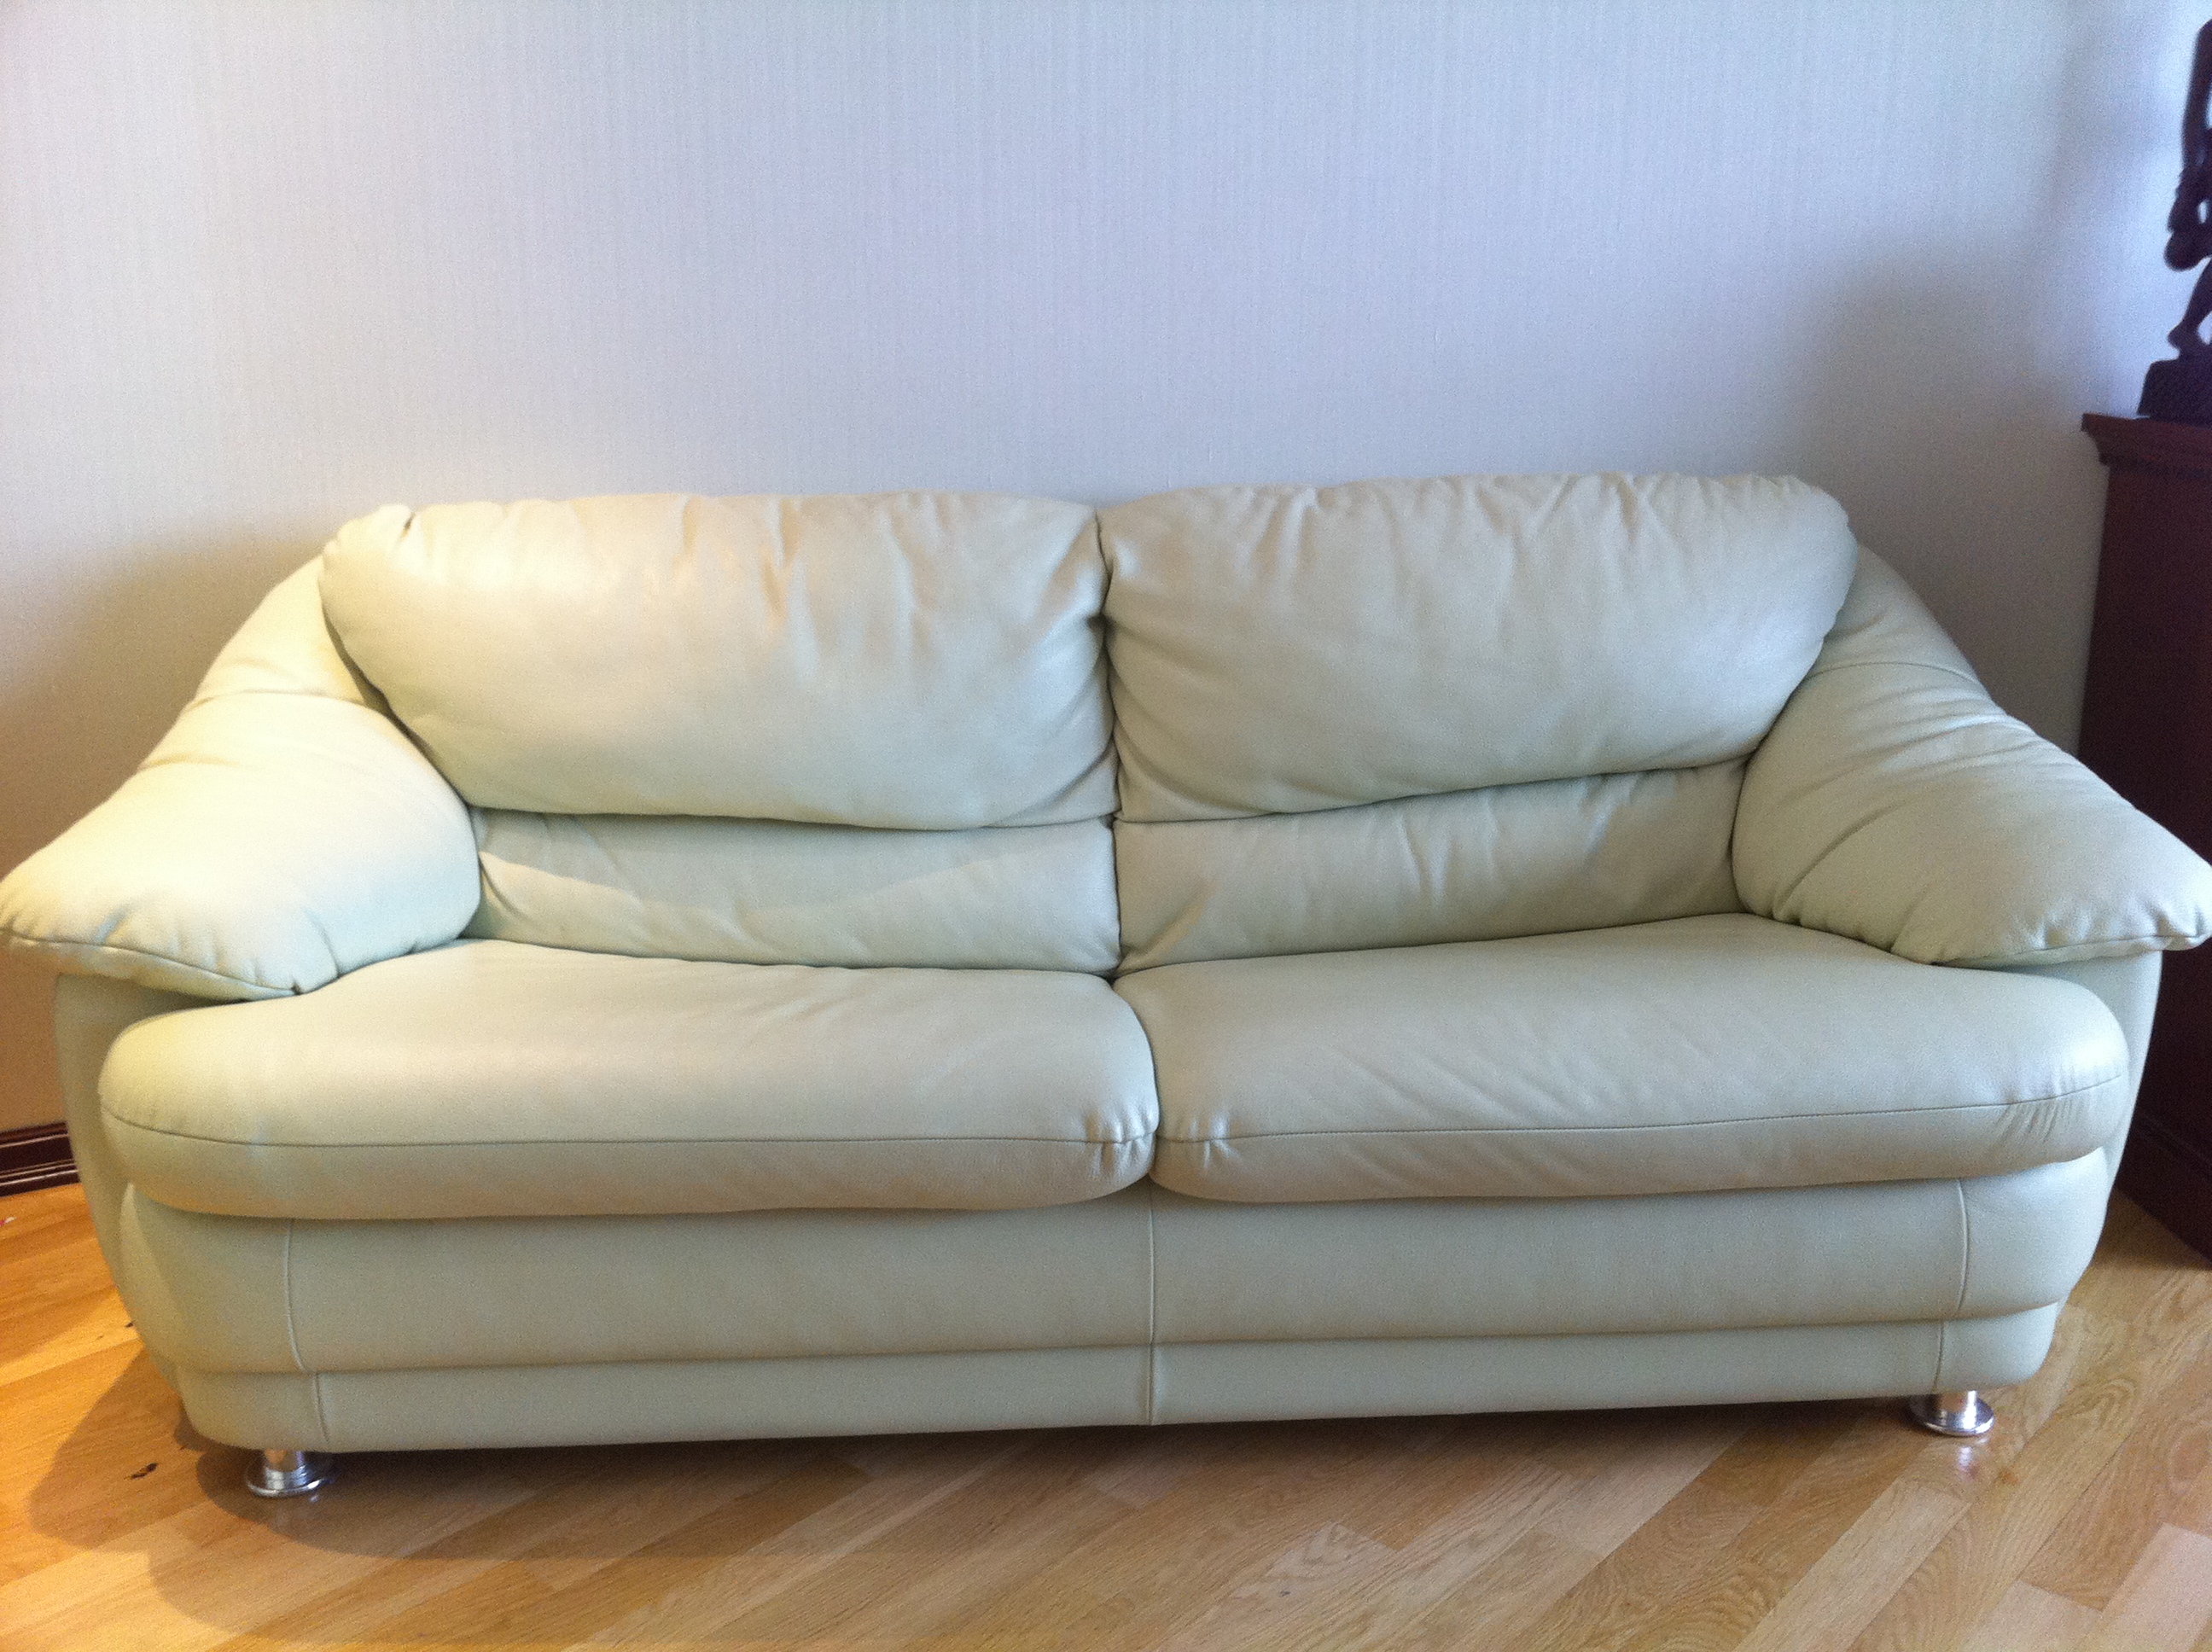 Мебель бу купить диваны. Маленький кожаный диван. Диван кожаный 1.5 метра. Подержанная мебель. Бэушные кожаные диваны.